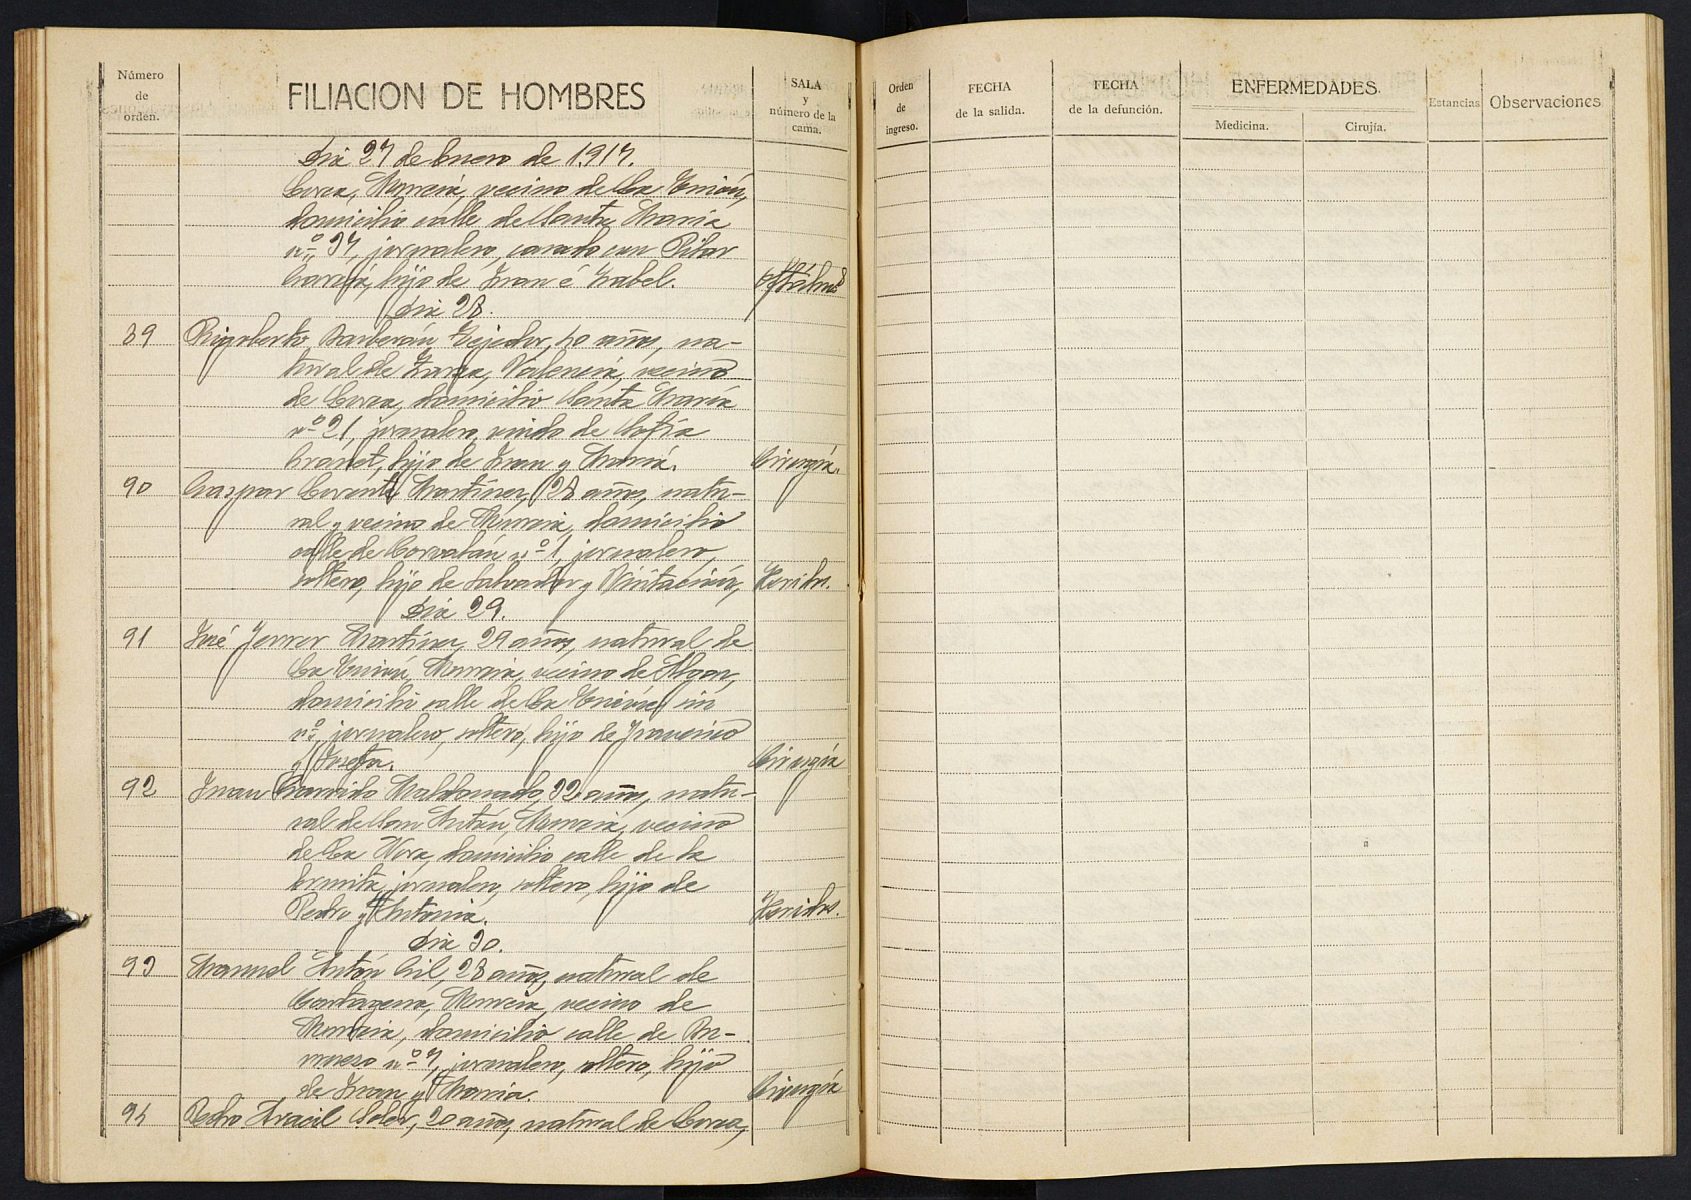 Registro de entrada y salida de enfermos del Hospital. (Hombres). Años 1915, septiembre-1917, septiembre.